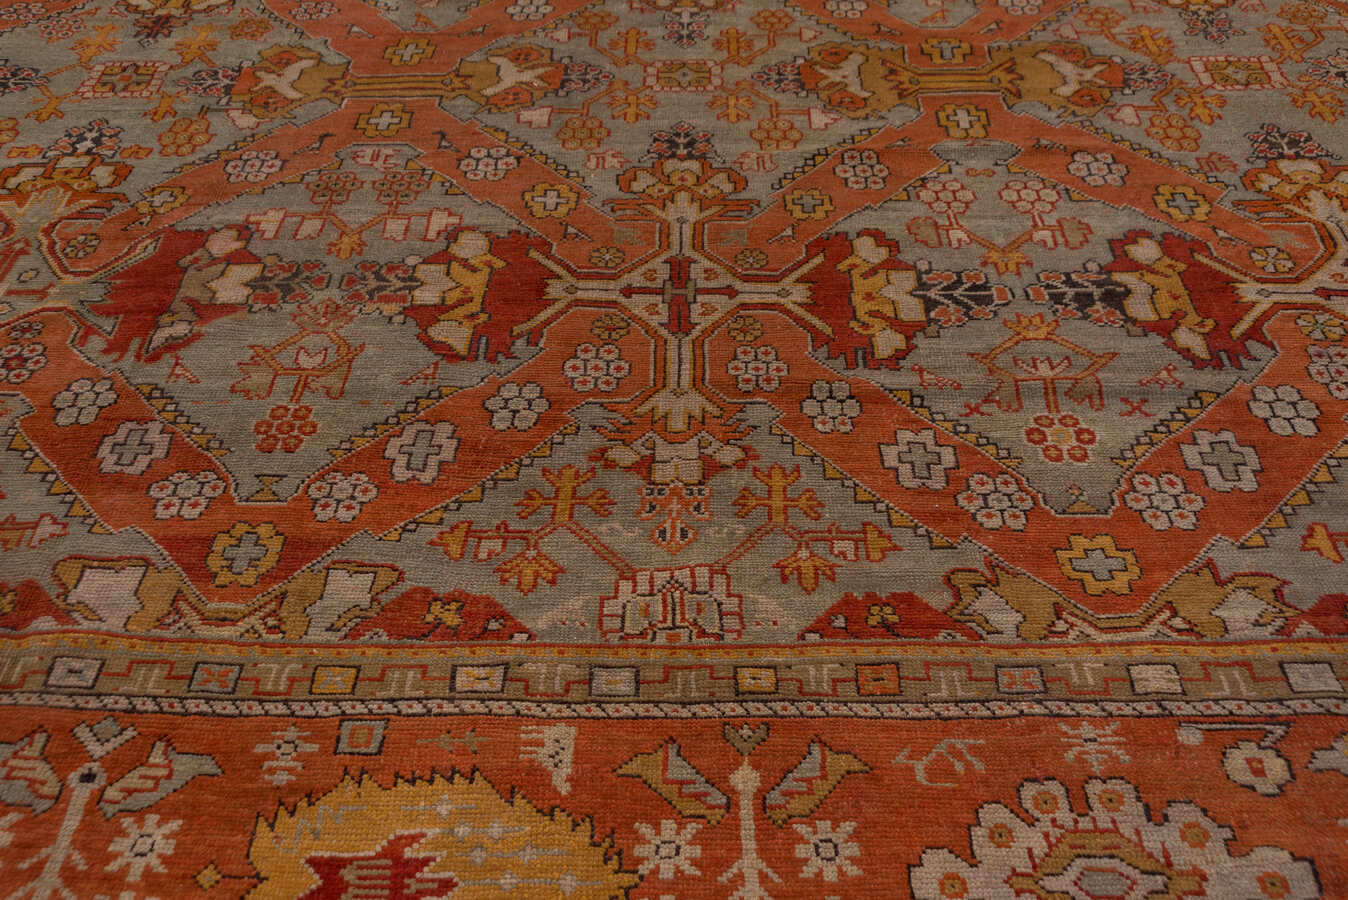 Antique oushak Carpet - # 57330